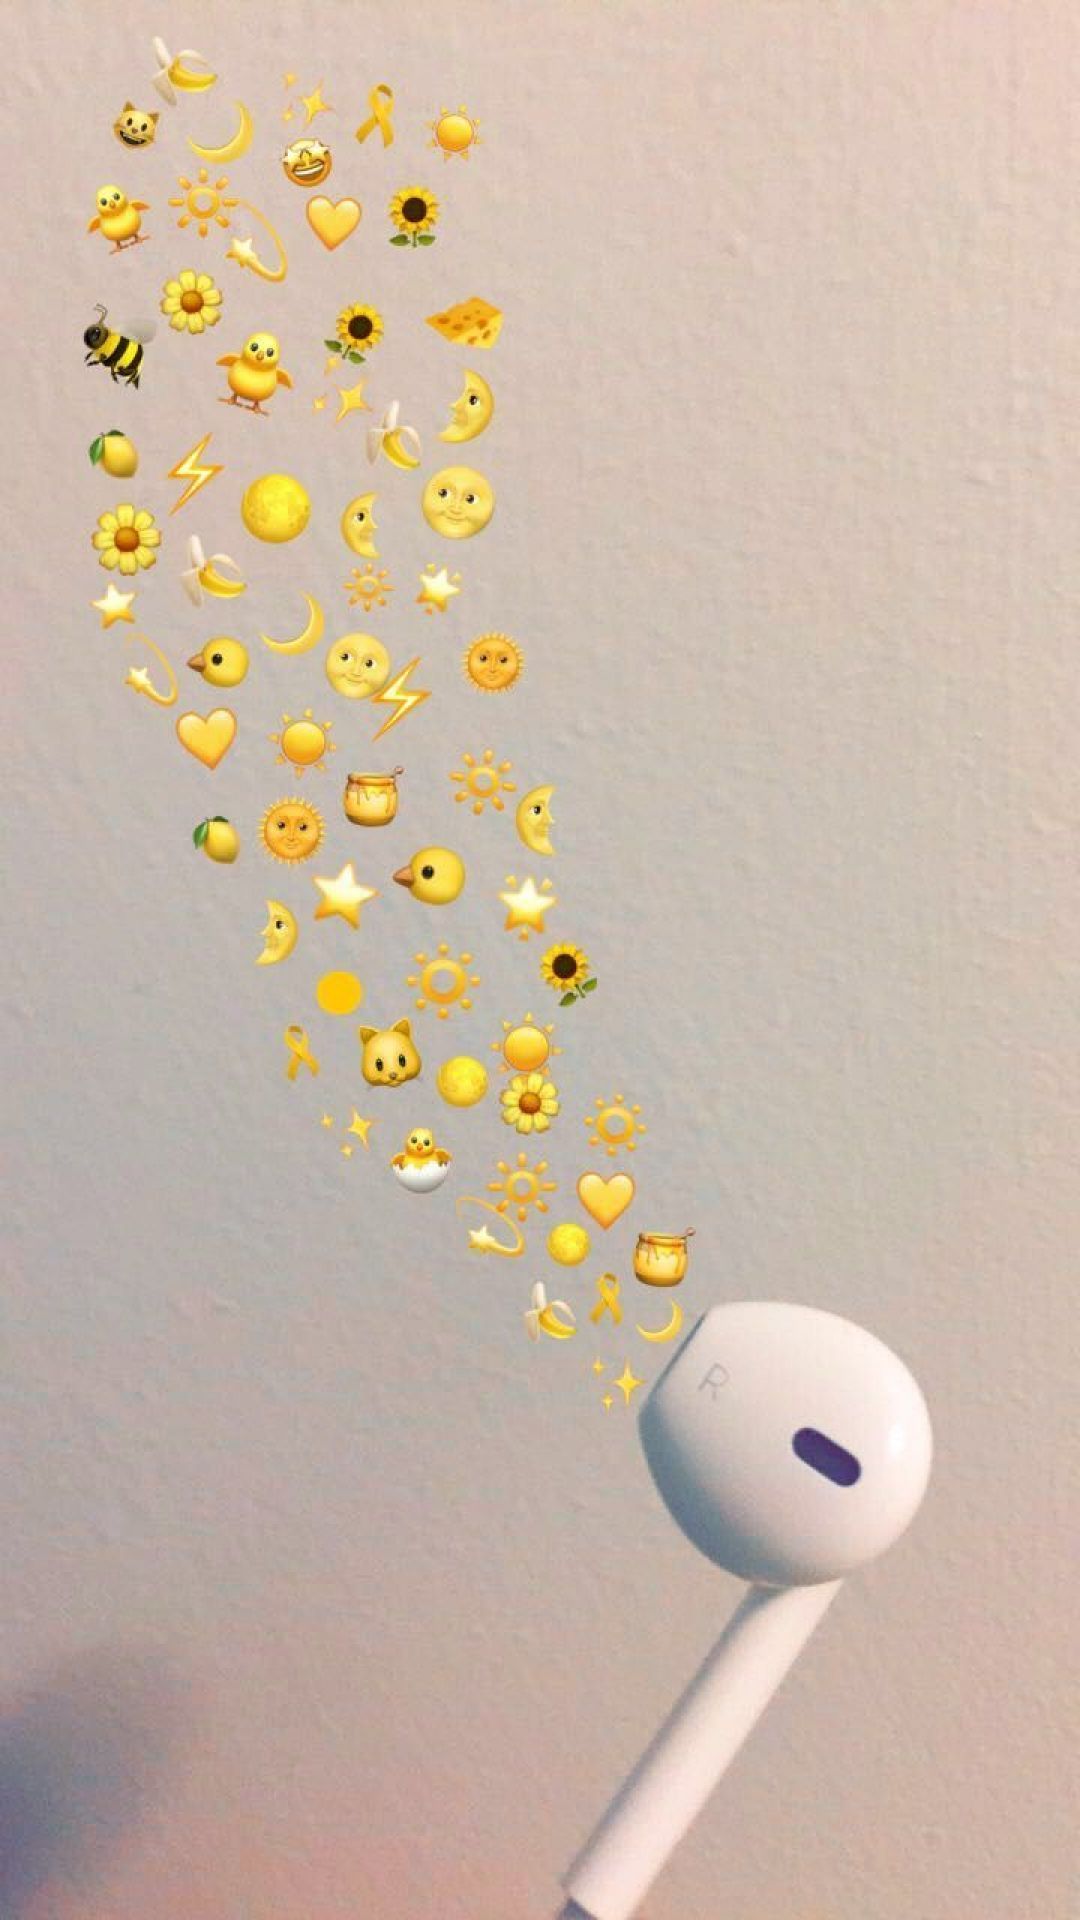 Aesthetic Emoji Wallpaper